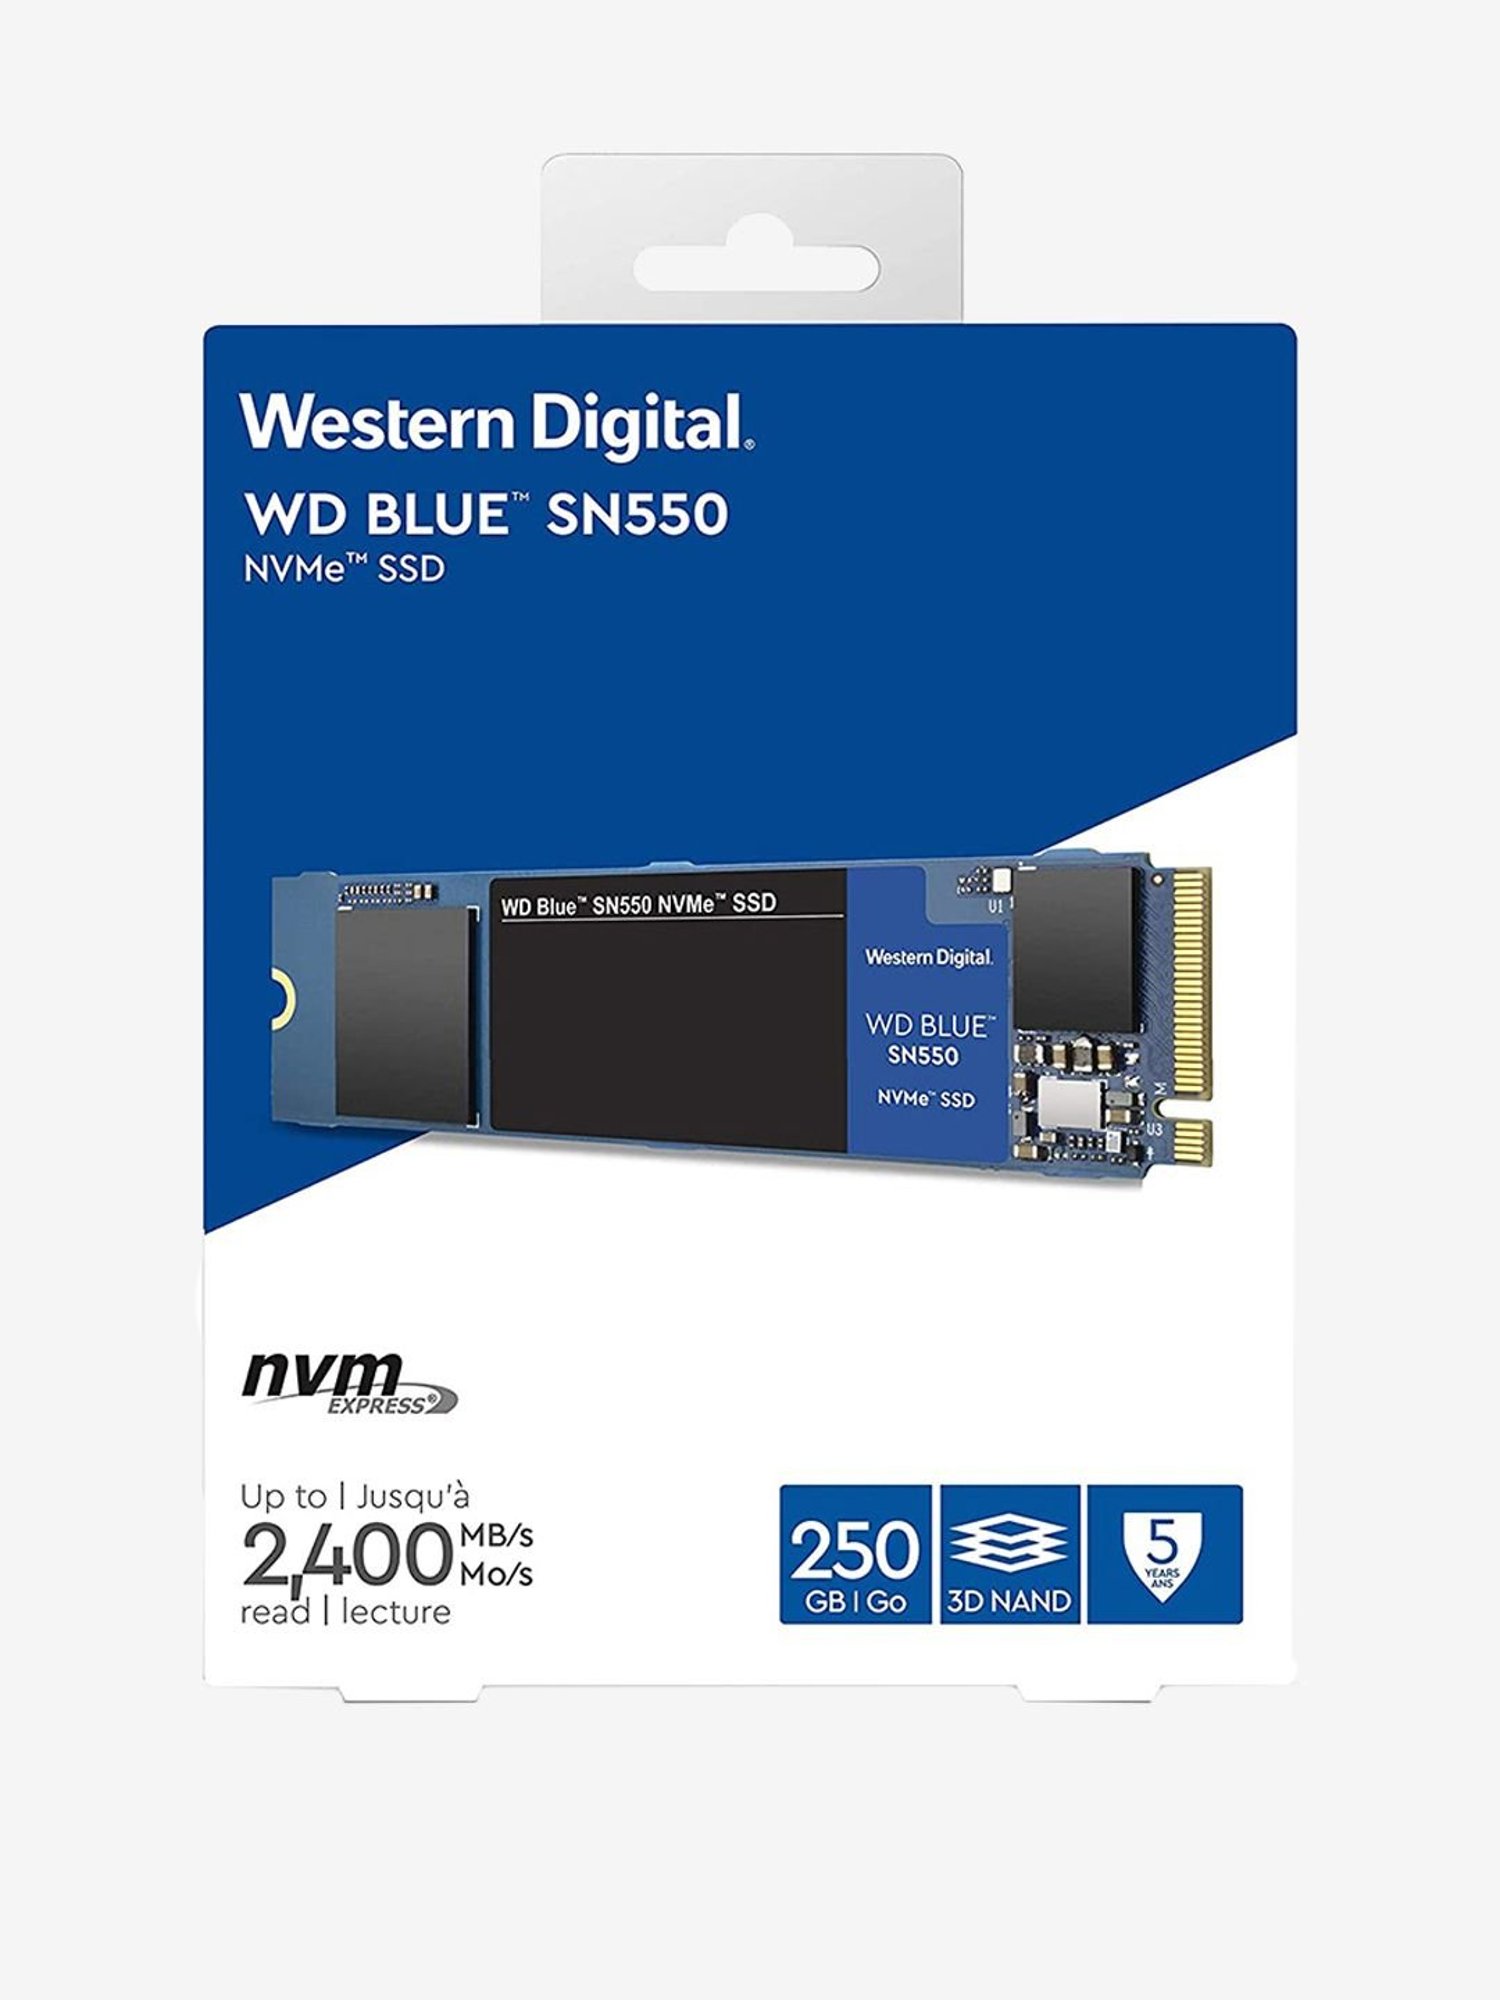 Derfra Ernest Shackleton forvrængning Buy WD Blue SN550 NVMe 250GB M.2 PCIE Gen3 Internal SSD Online At Best  Price @ Tata CLiQ